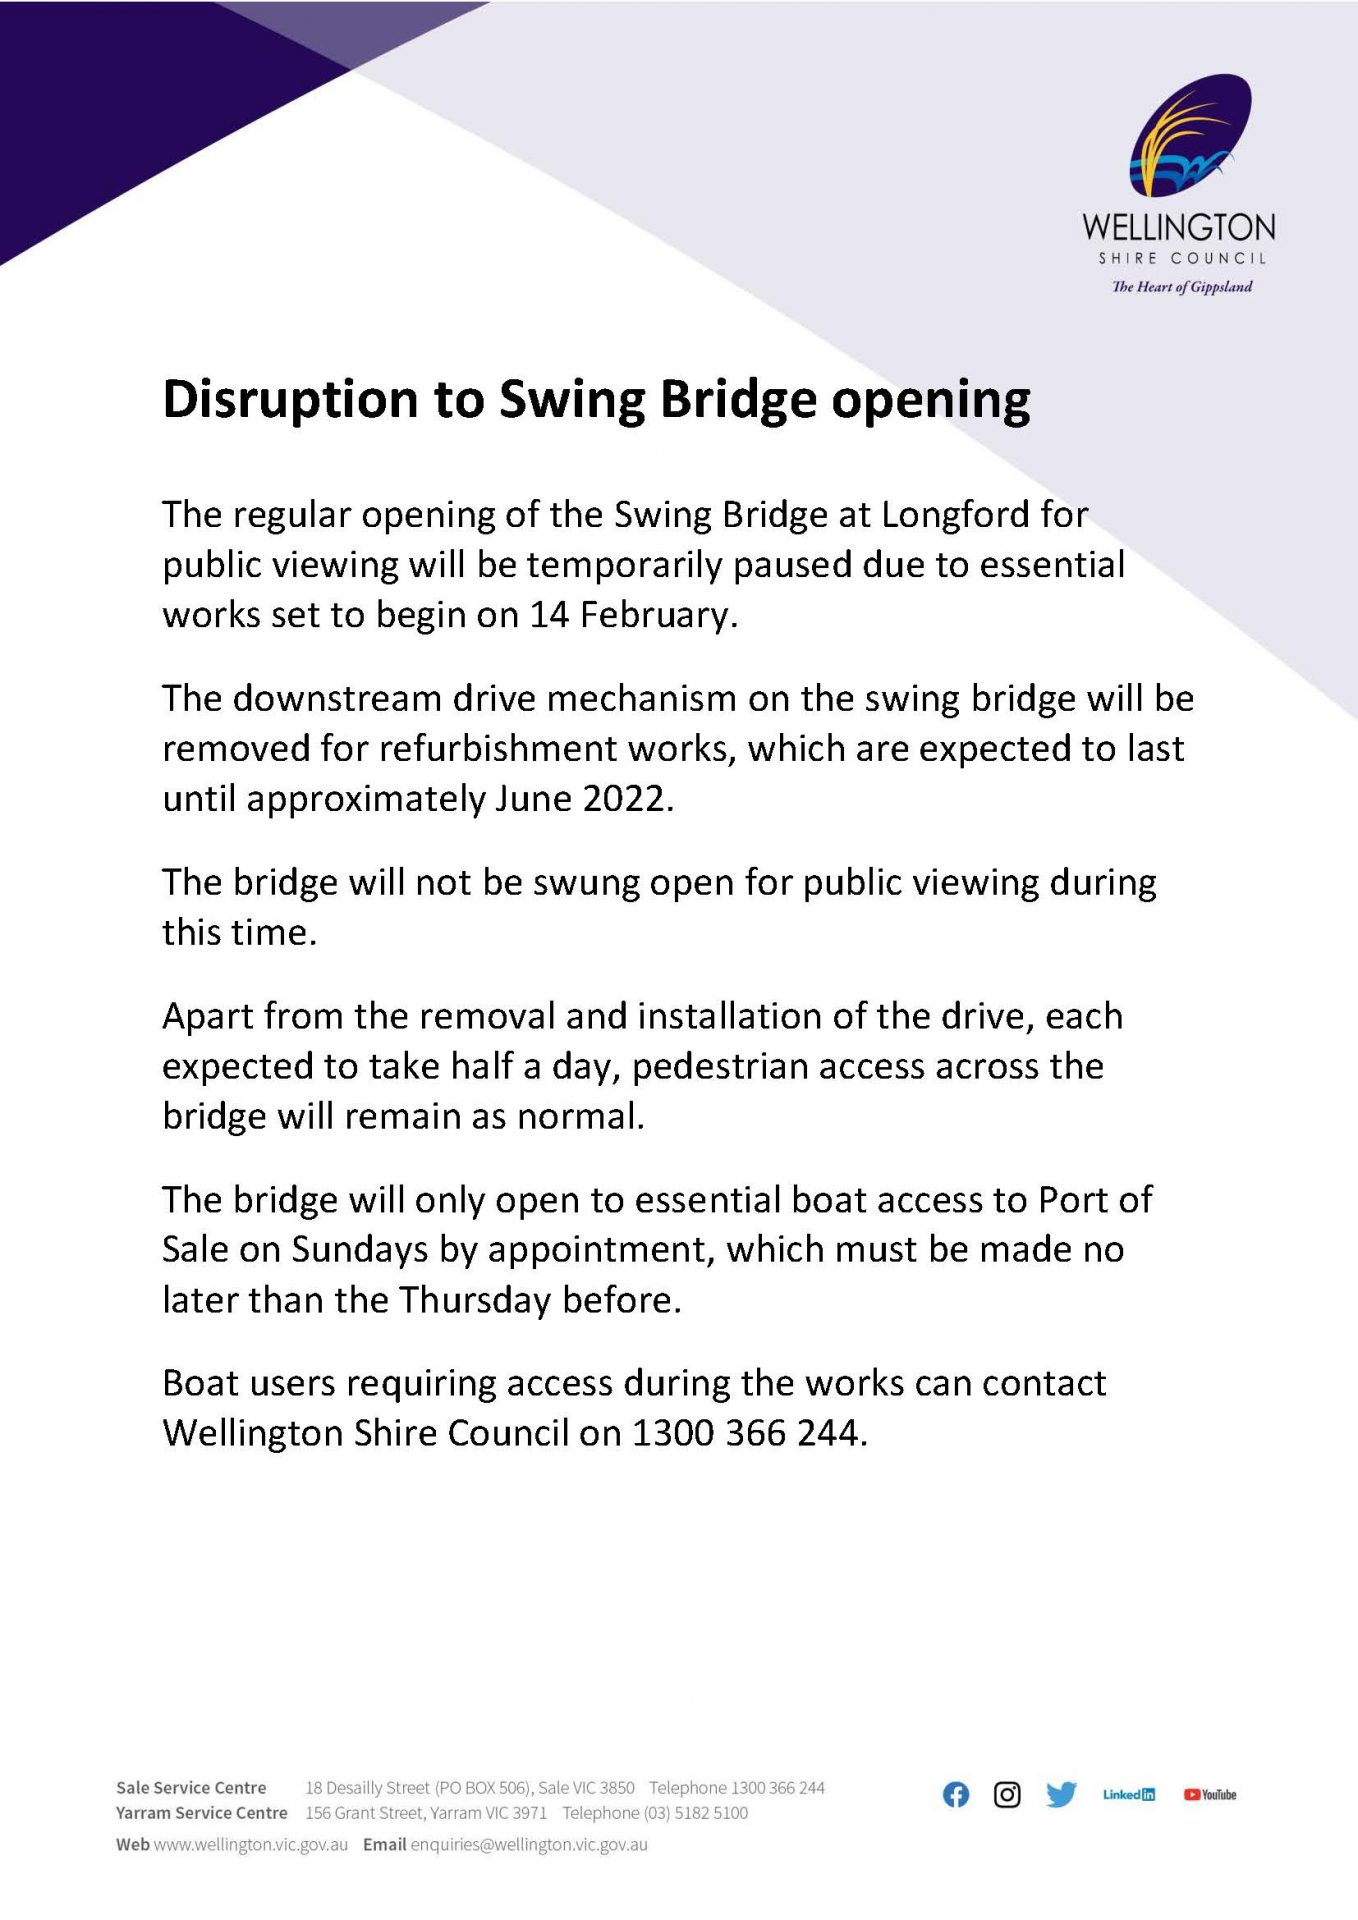 2022-wsc-swing-bridge-opening-disruption